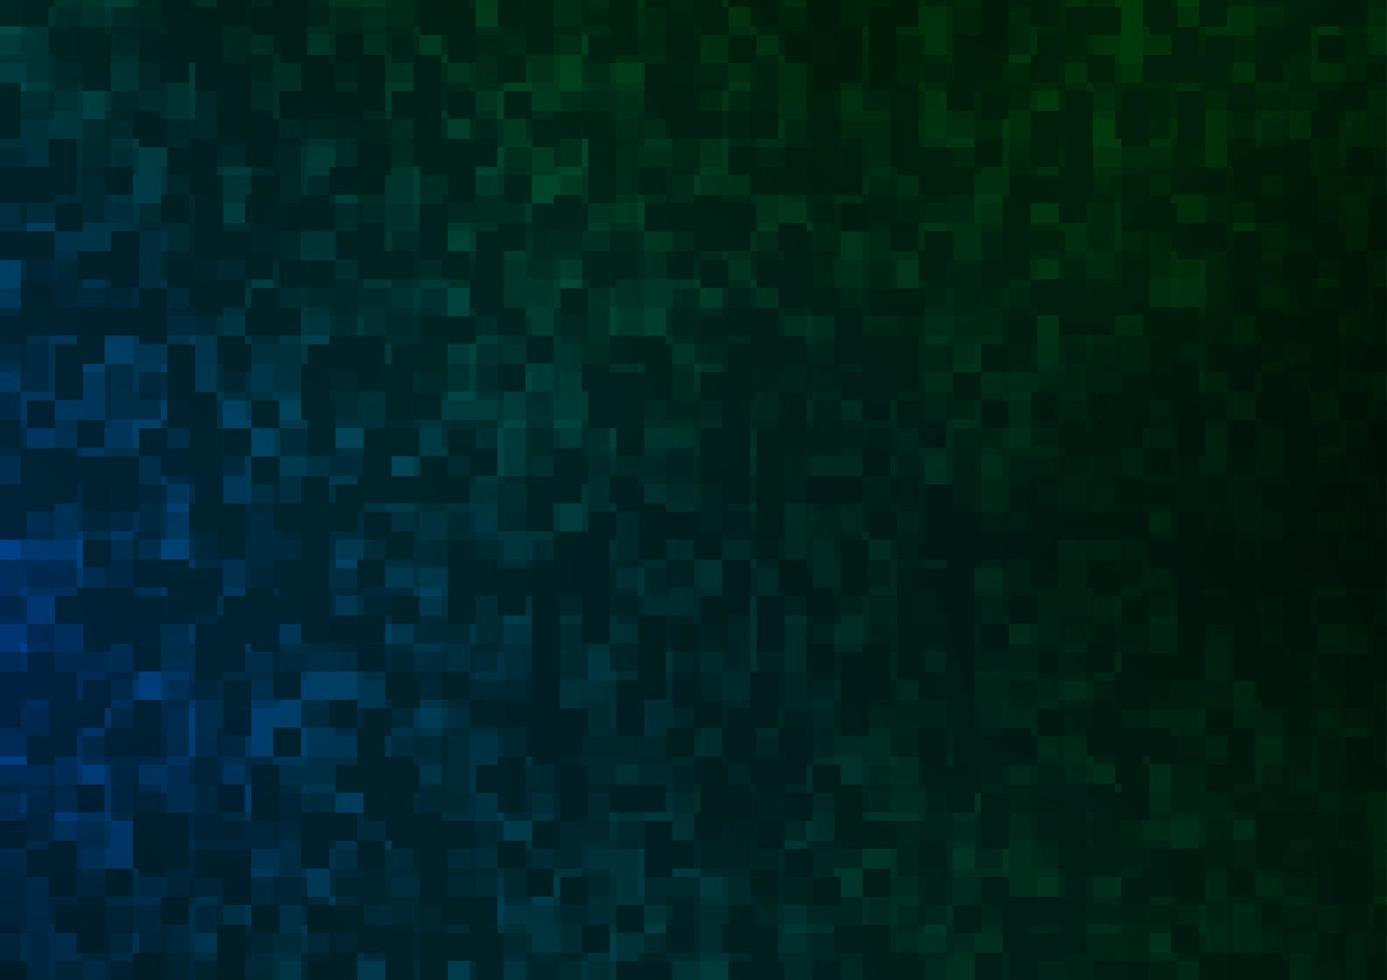 patrón de vector azul oscuro, verde en estilo cuadrado.